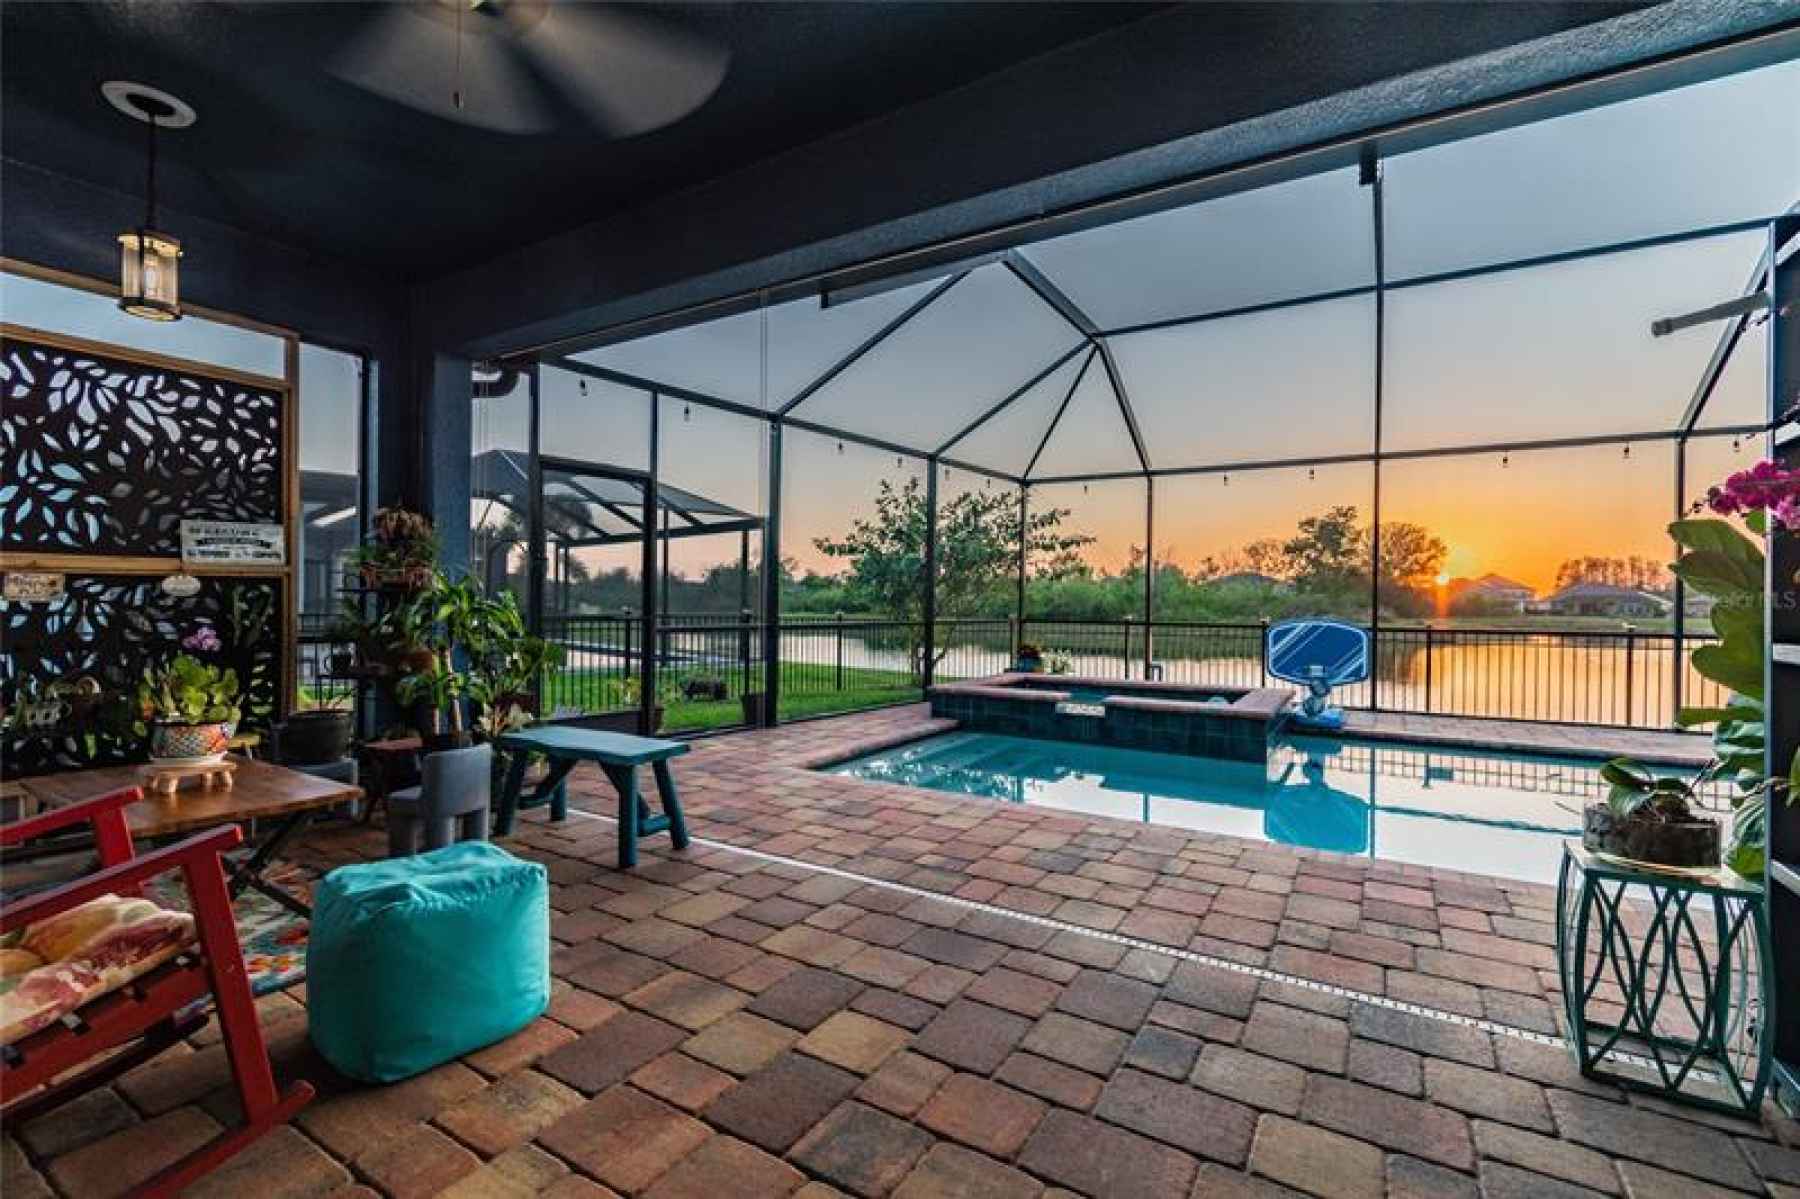 patio overlooking pool